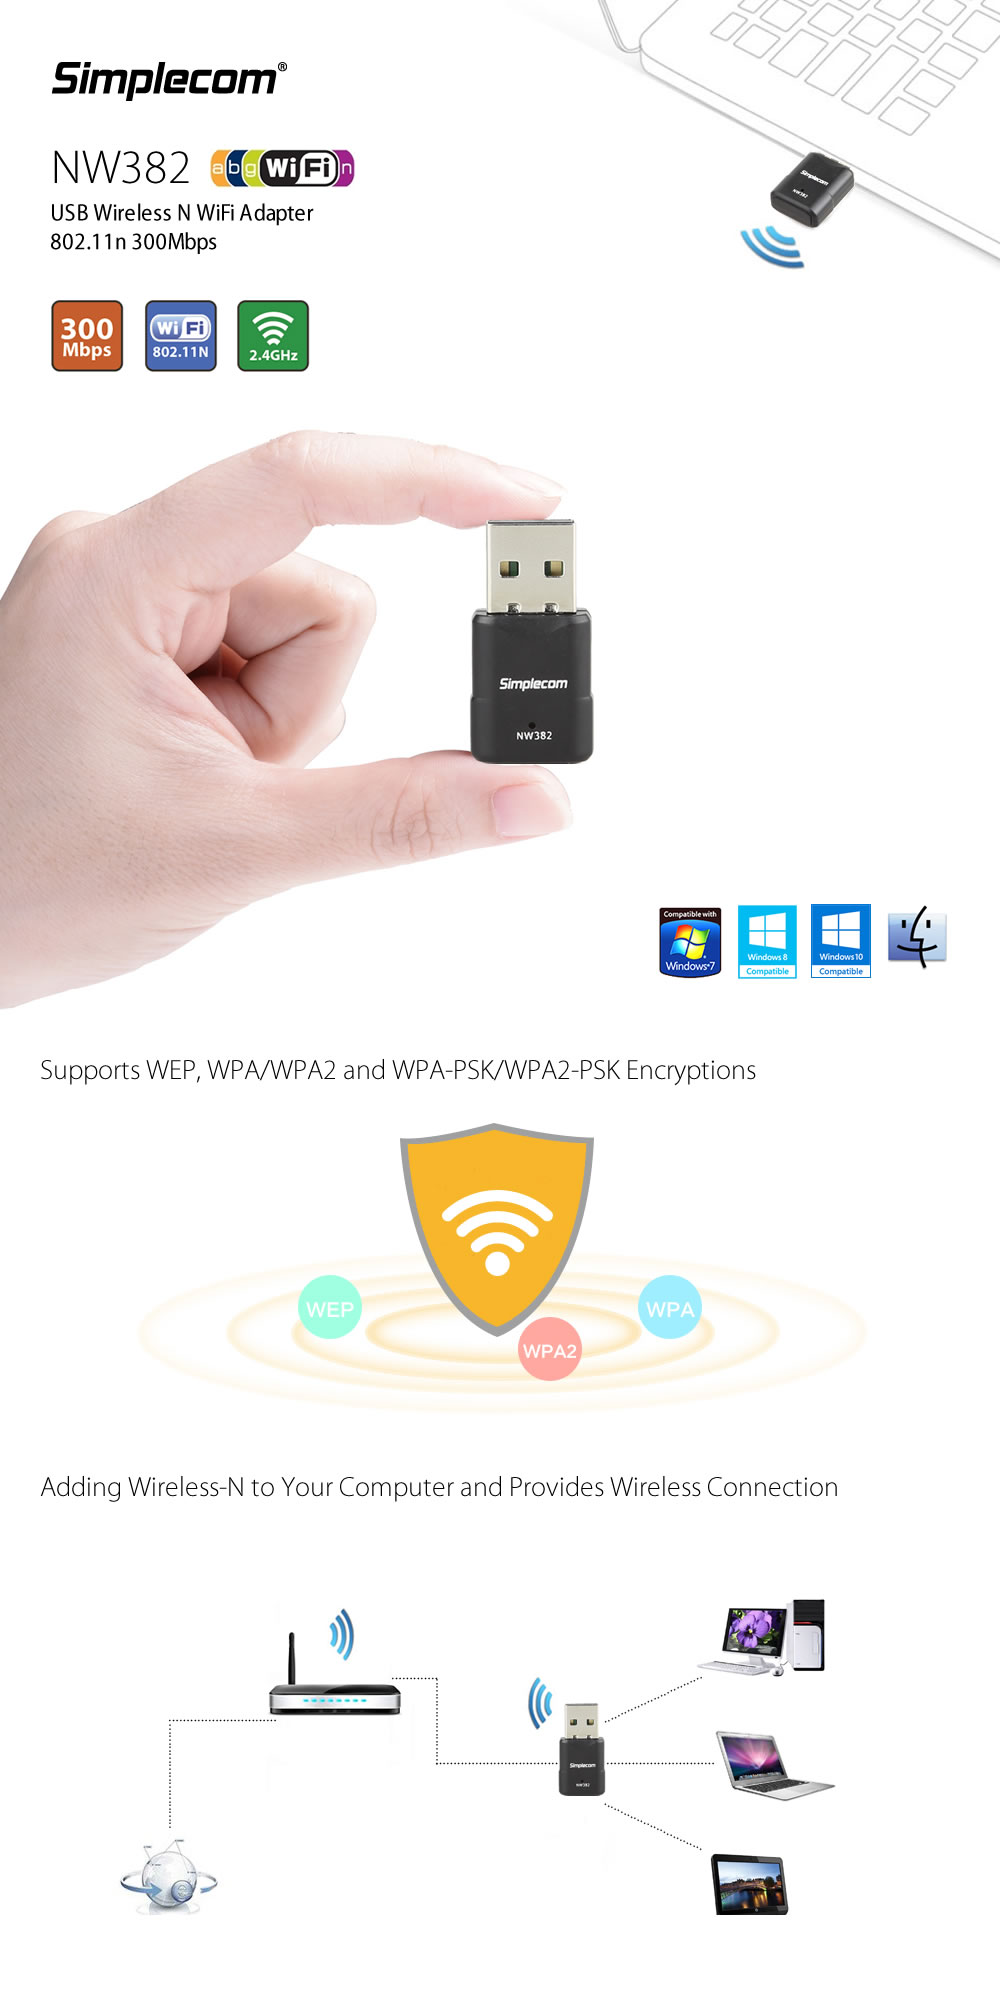 Simplecom Nw382 Mini Wireless n Usb Wifi Adapter 802.11n